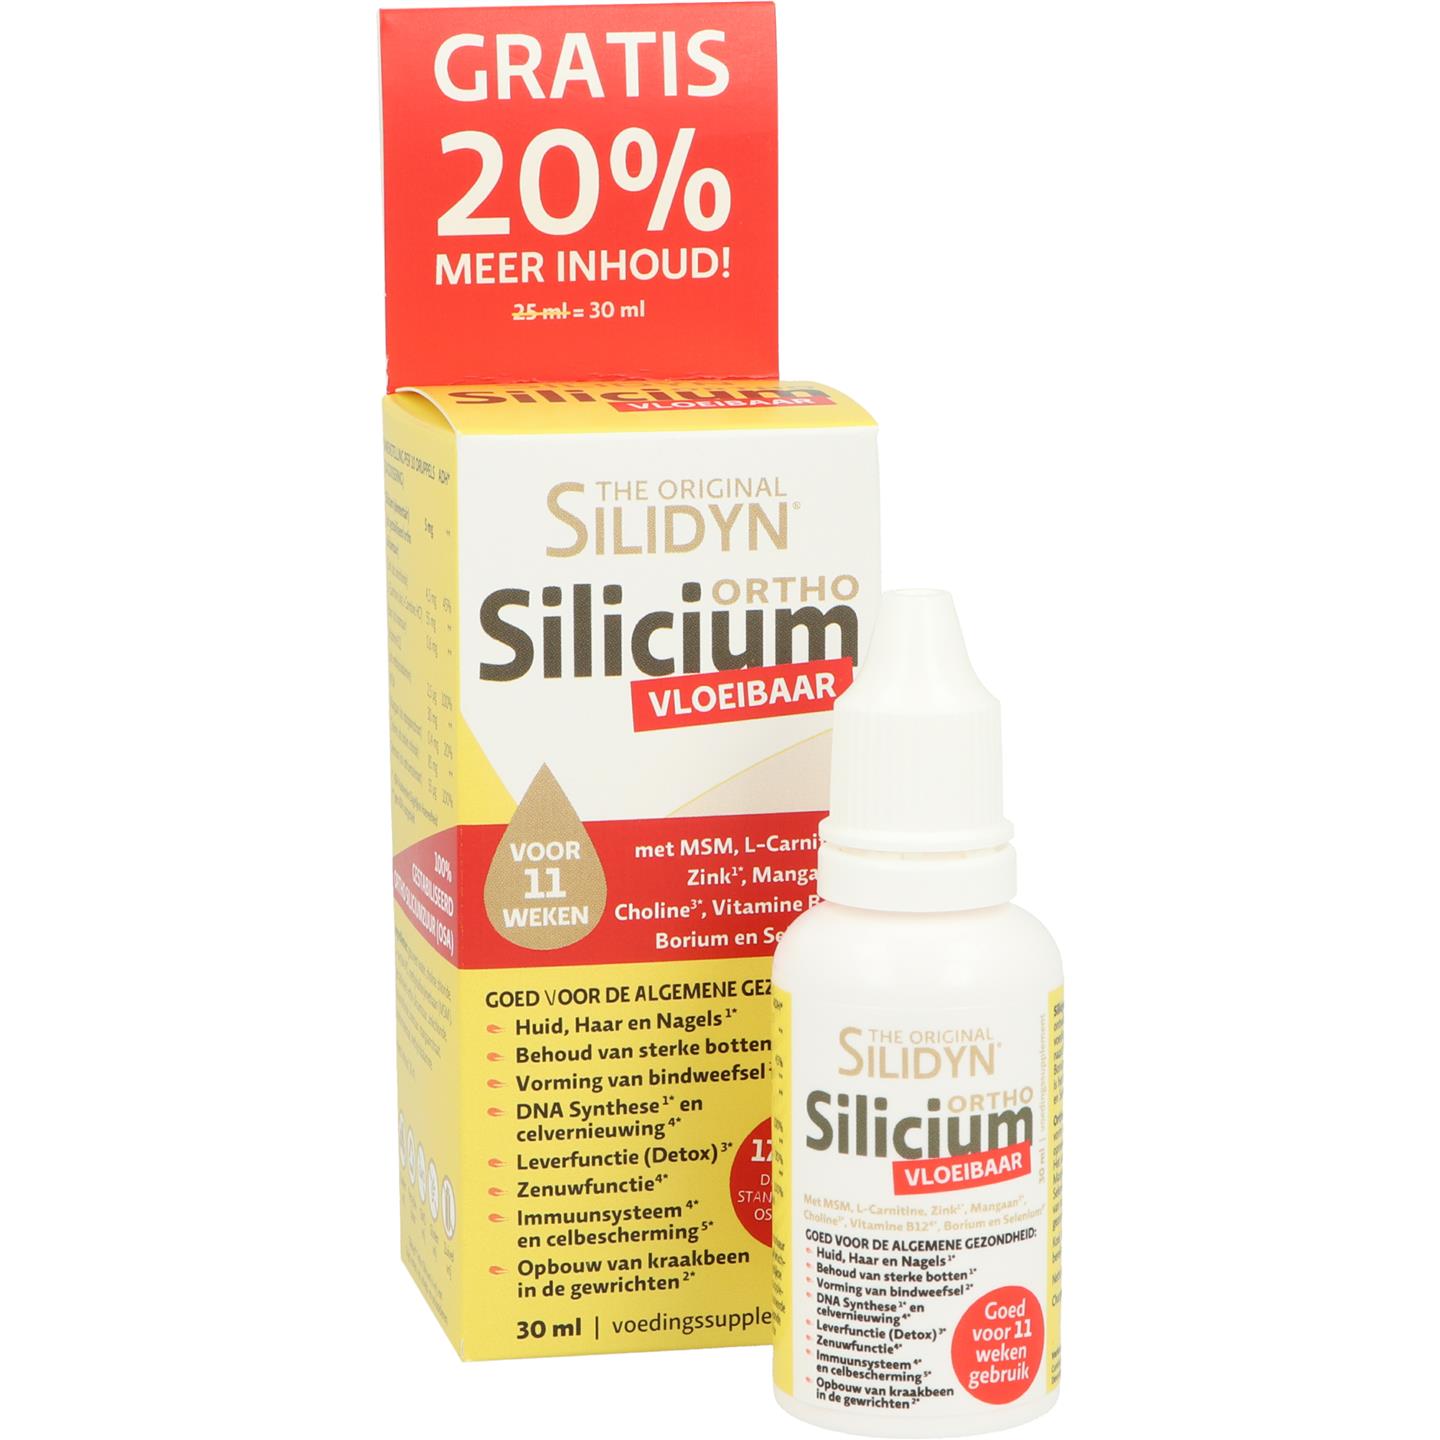 Silidyn Silicium